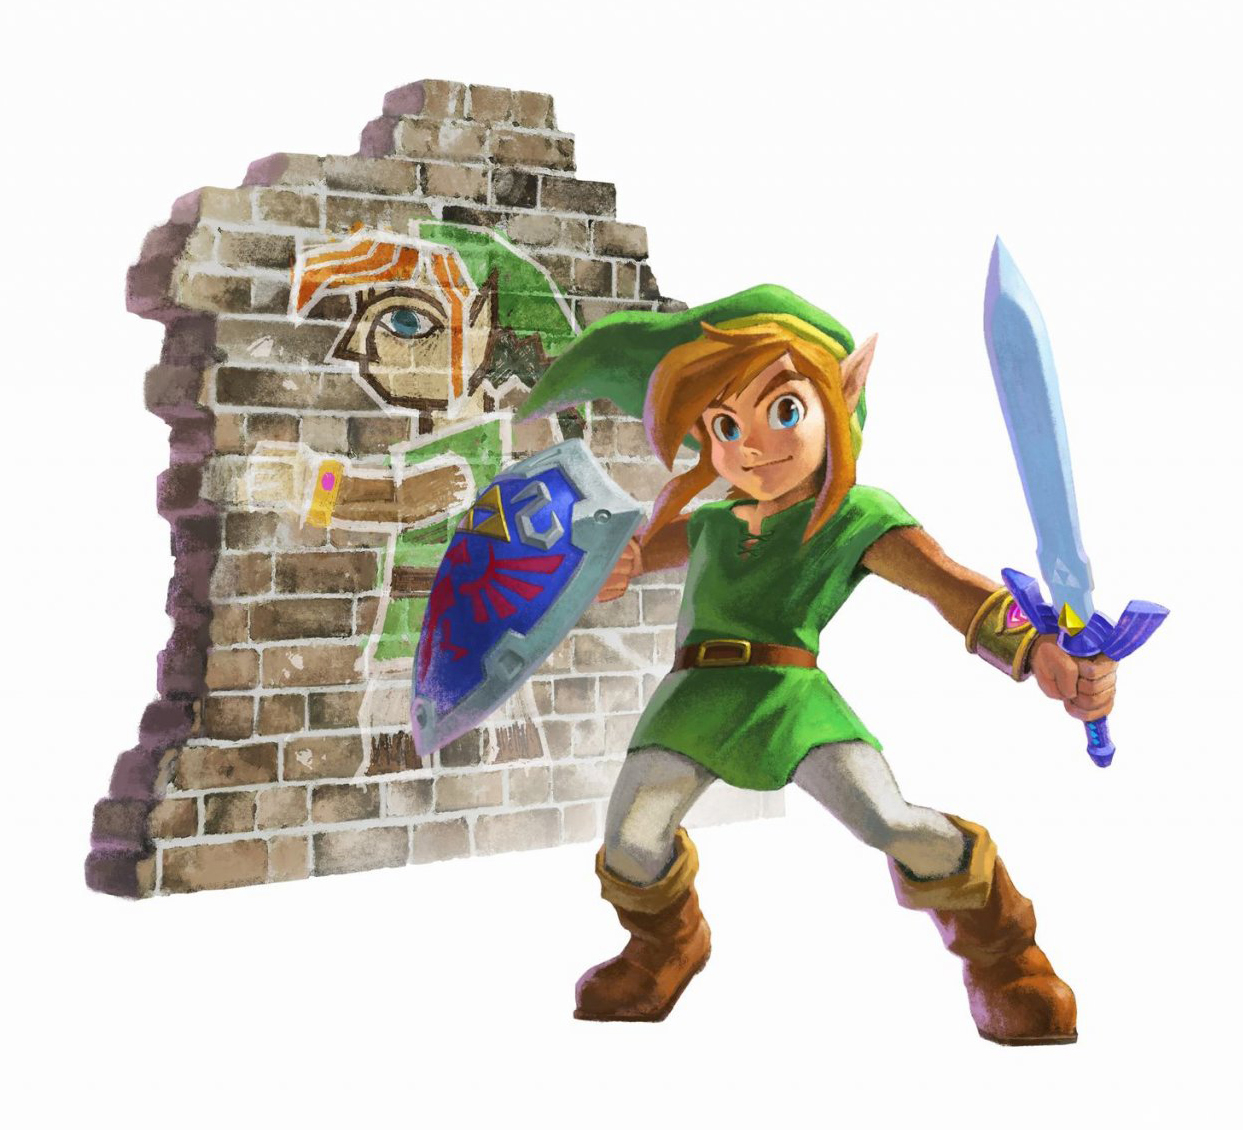 The Legend Of Zelda A Link Between Worlds Wallpapers Video Game Hq The Legend Of Zelda A Link Between Worlds Pictures 4k Wallpapers 2019